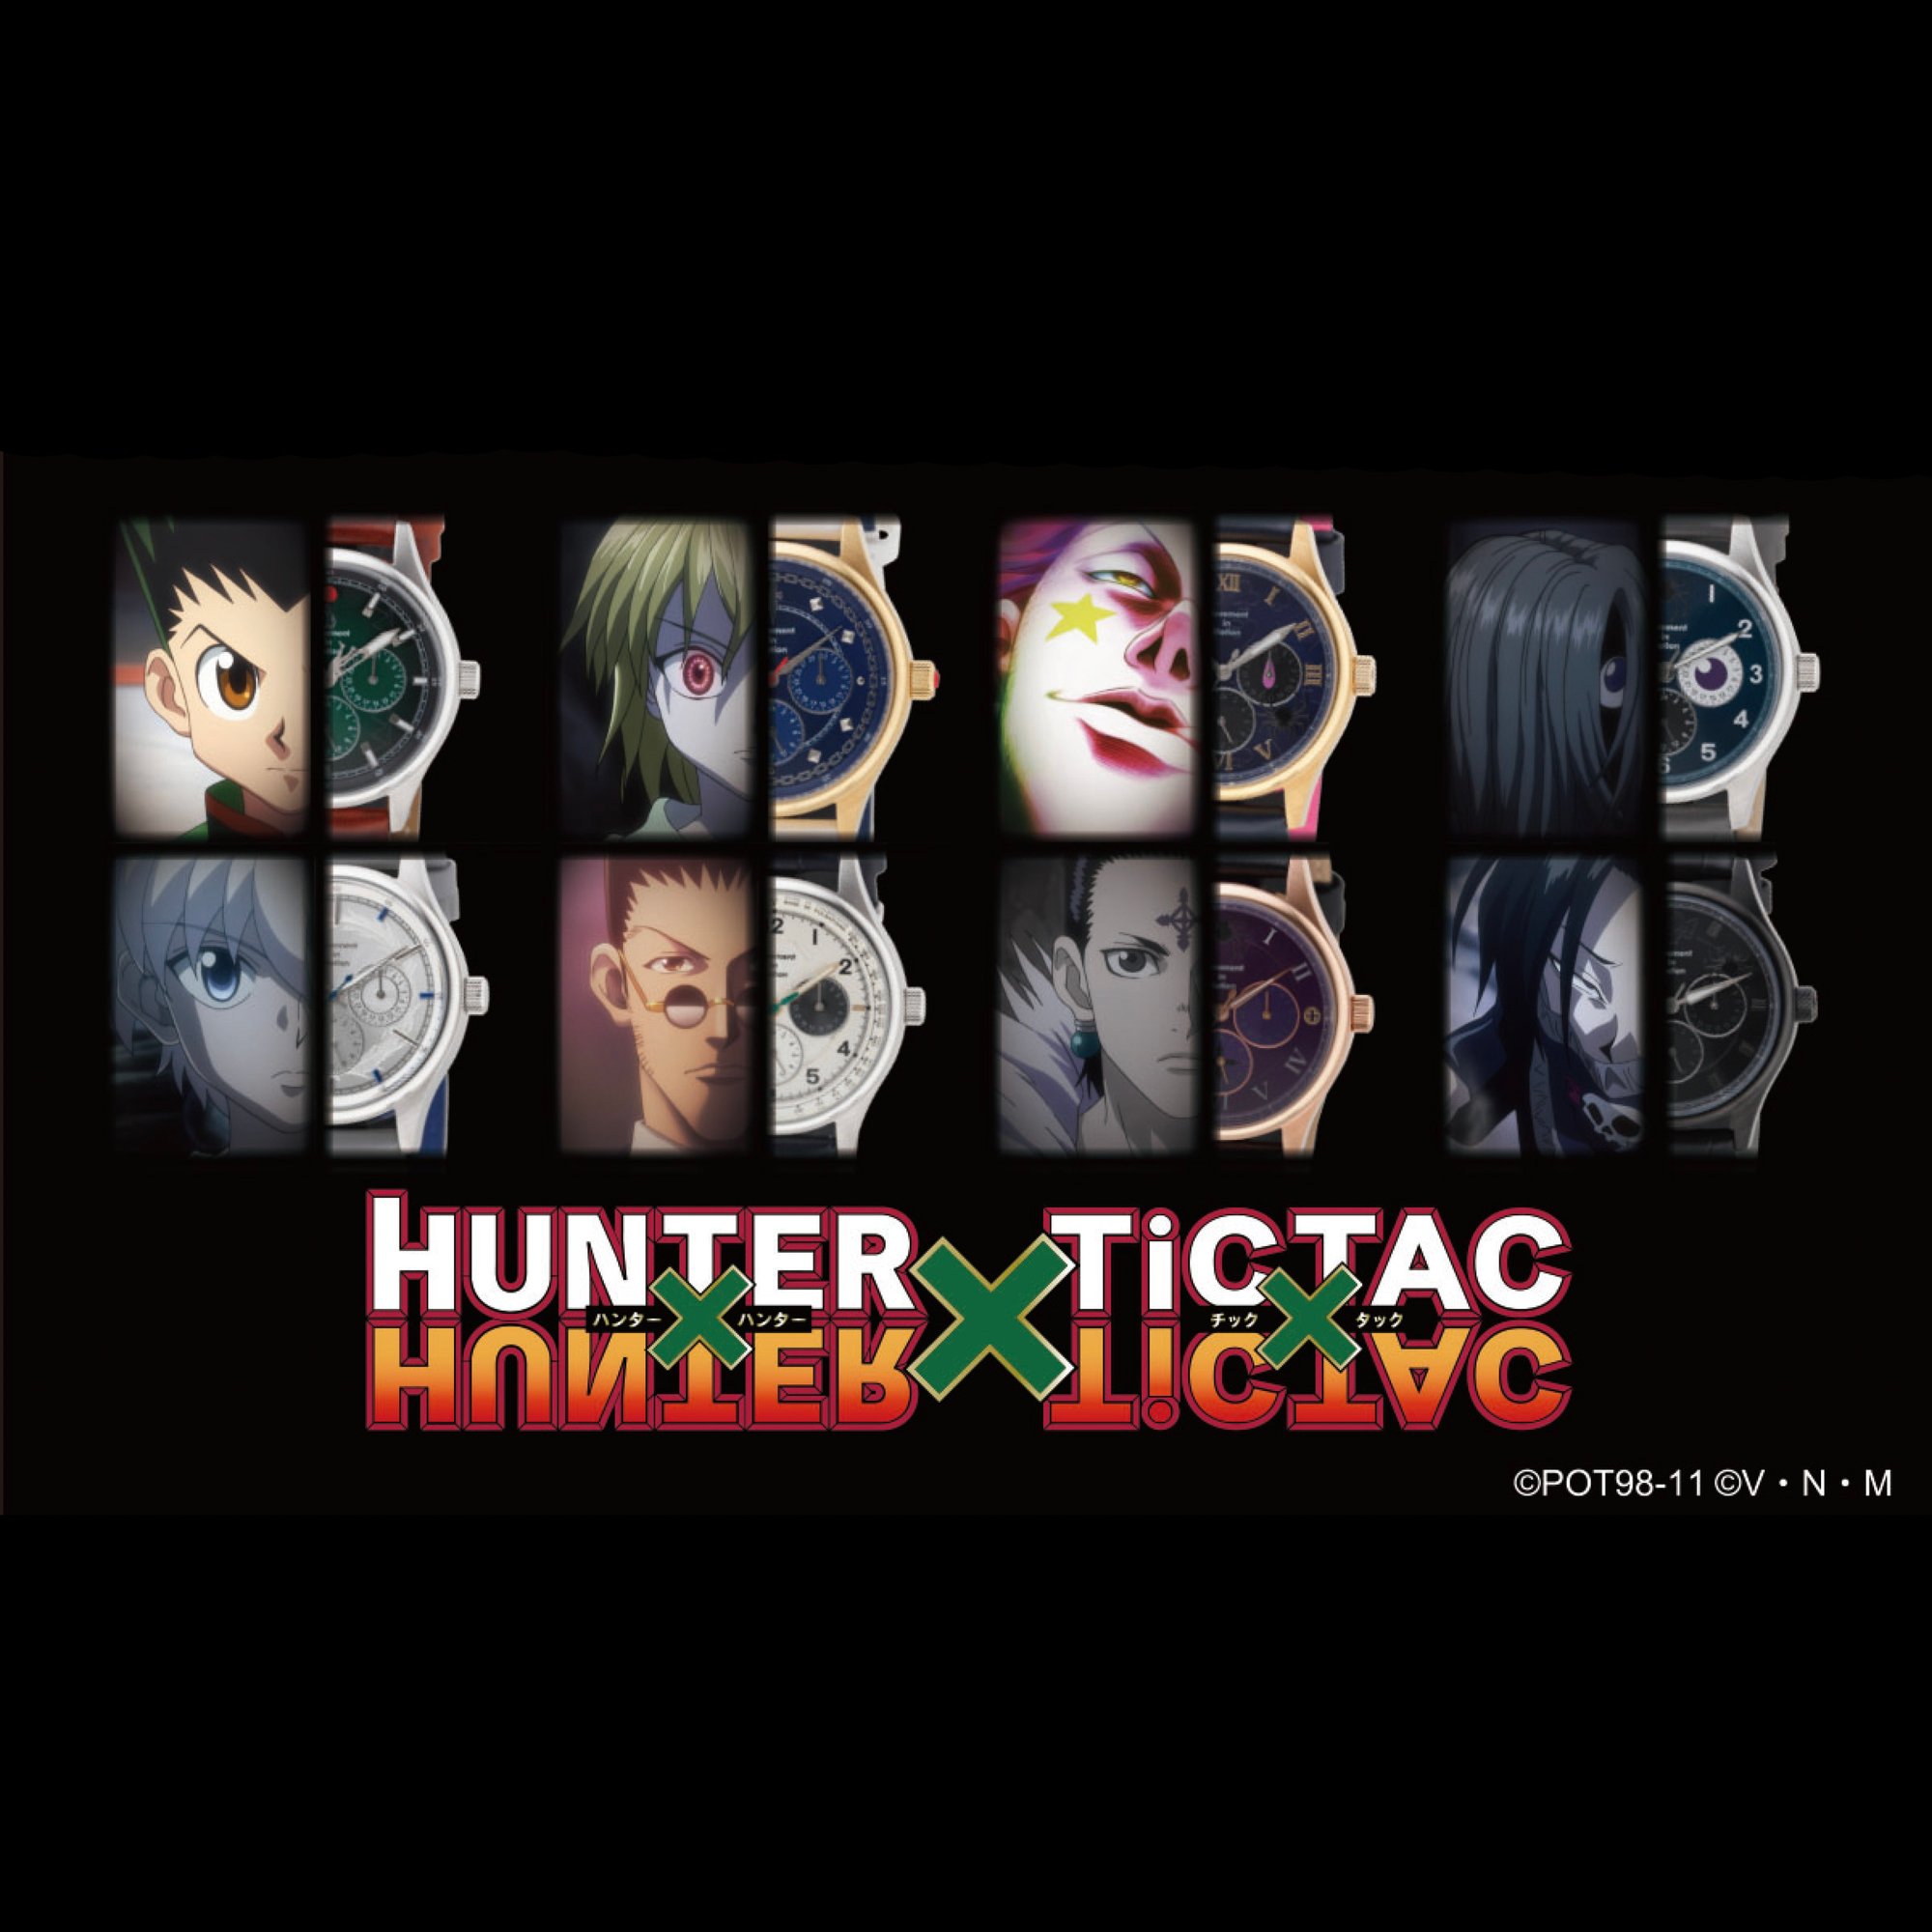 Hunter Hunter とチックタックがコラボ 主人公ゴンら人気キャラクターをイメージ